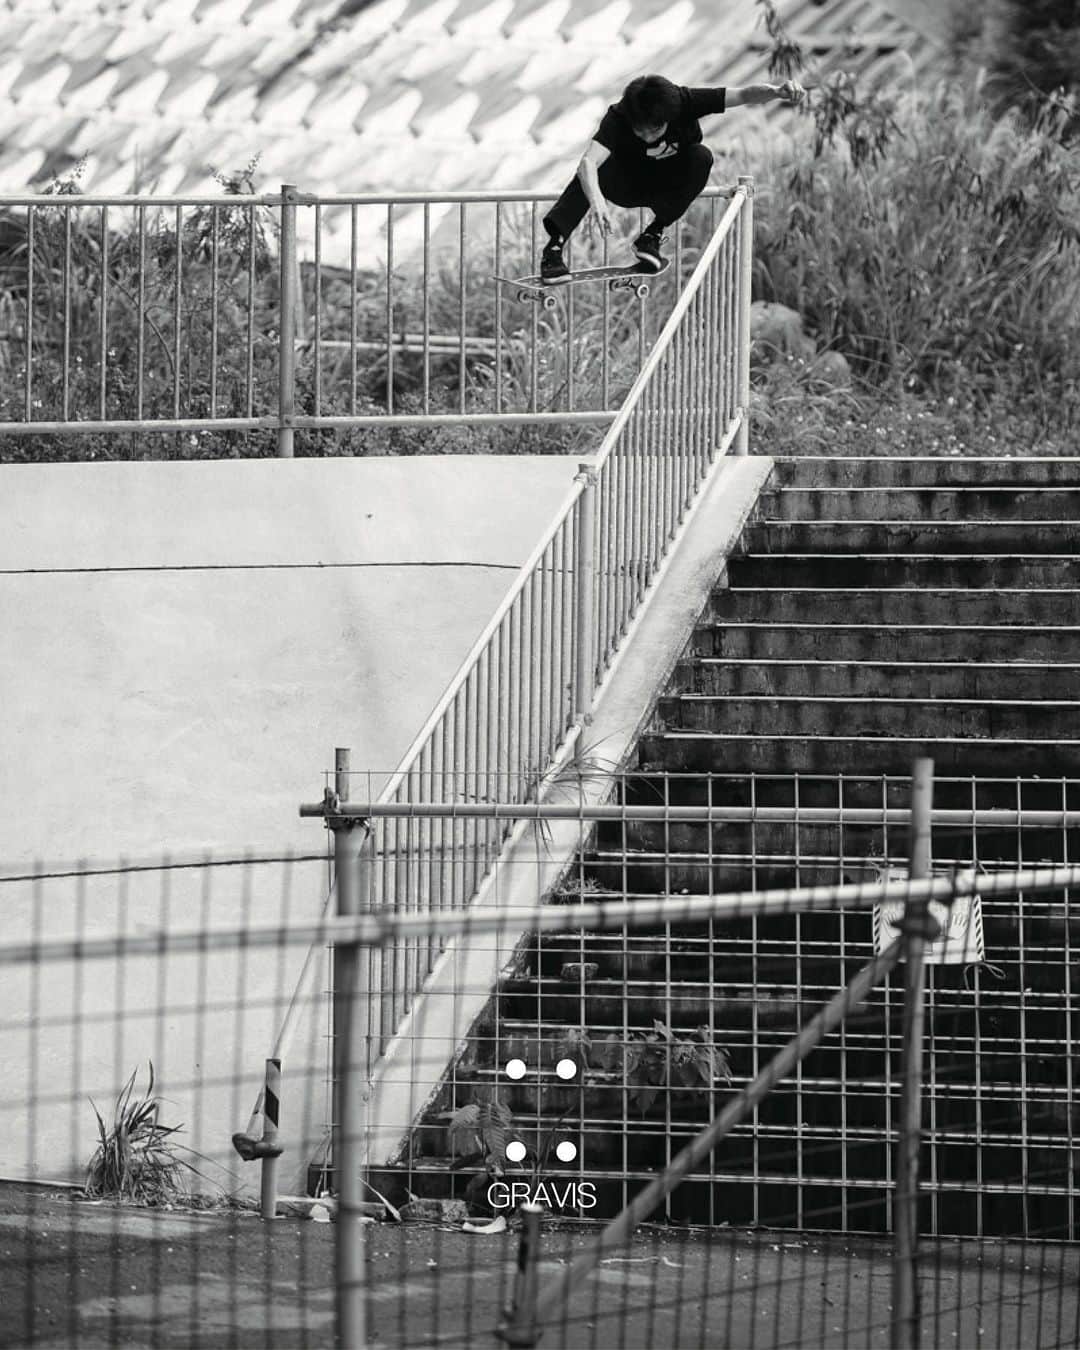 GRAVIS Japanのインスタグラム：「グラビススケートボーディングラインが復活。 詳しい情報は @gravis_skateboarding をチェック  @shogo__tanaka ollie over the rail in Filter Black as seen in “Undertaking” video. ライダー田中晶悟によるハンドレール超えのビックオーリーバンクイン。  #GRAVIS #Filter #skateboarding」